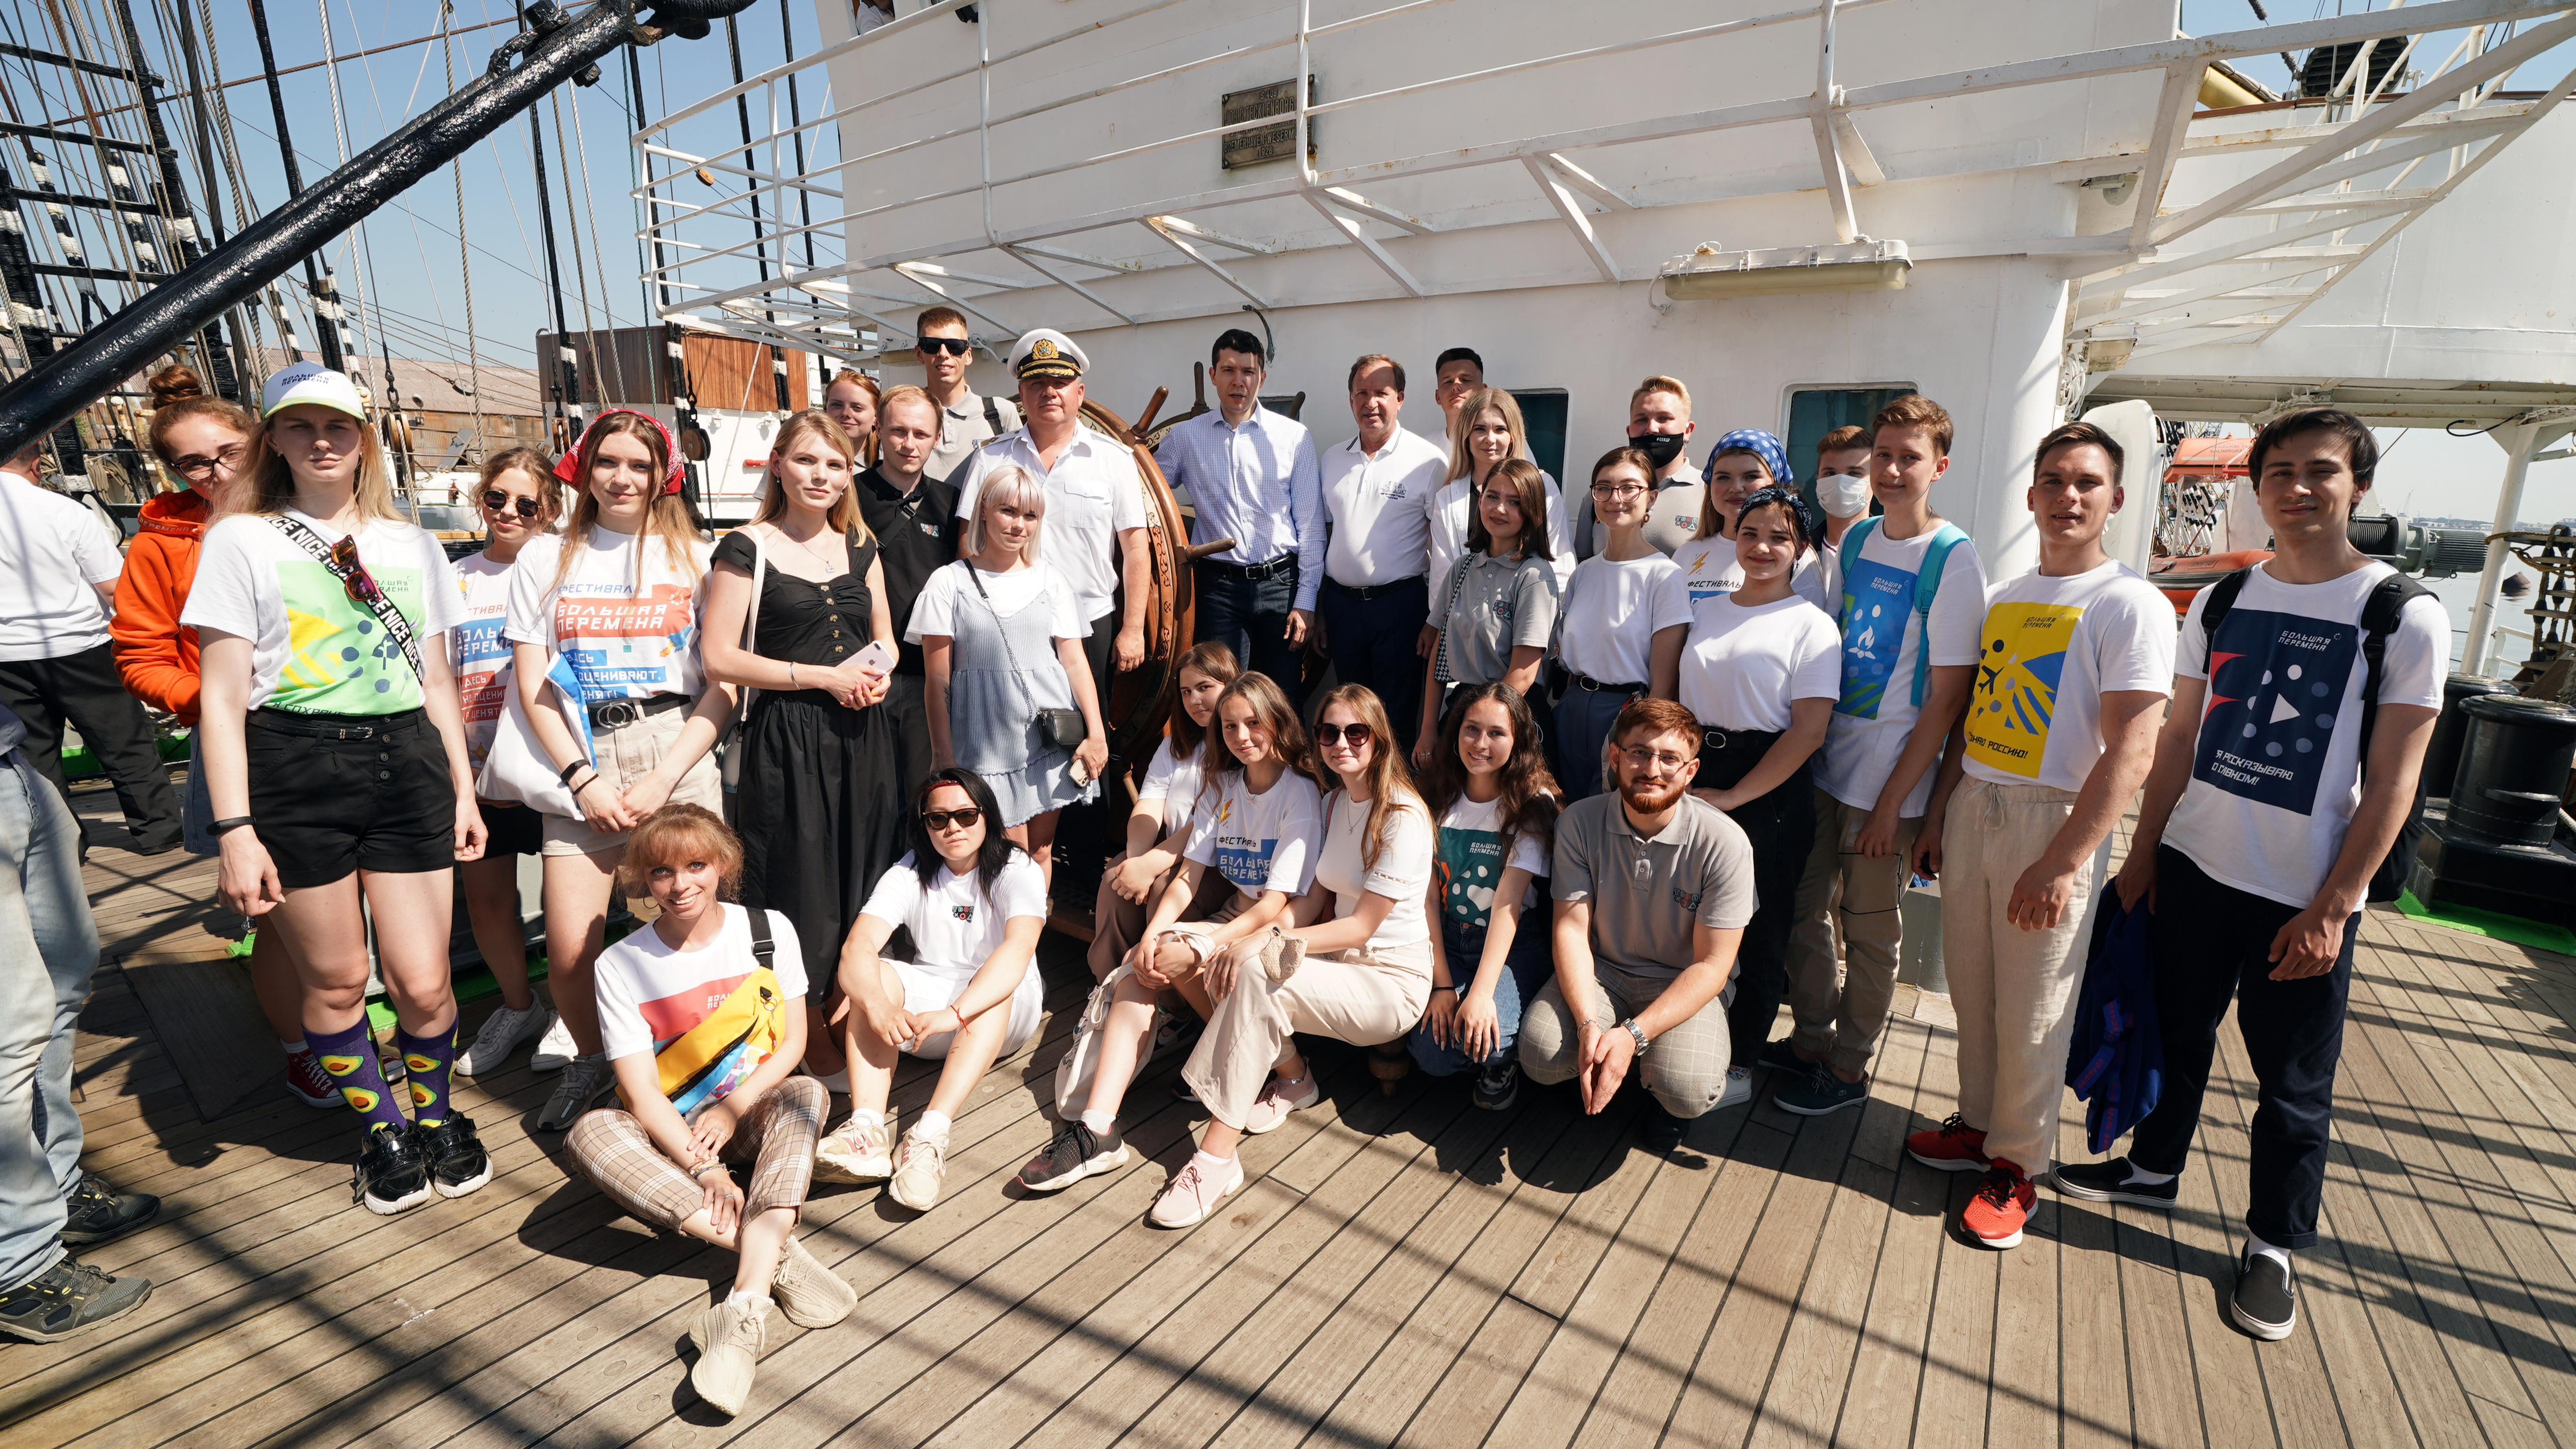 Антон Алиханов провёл экскурсию на барке «Крузенштерн» для школьников и студентов в рамках проекта, организованного Российским обществом «Знание»